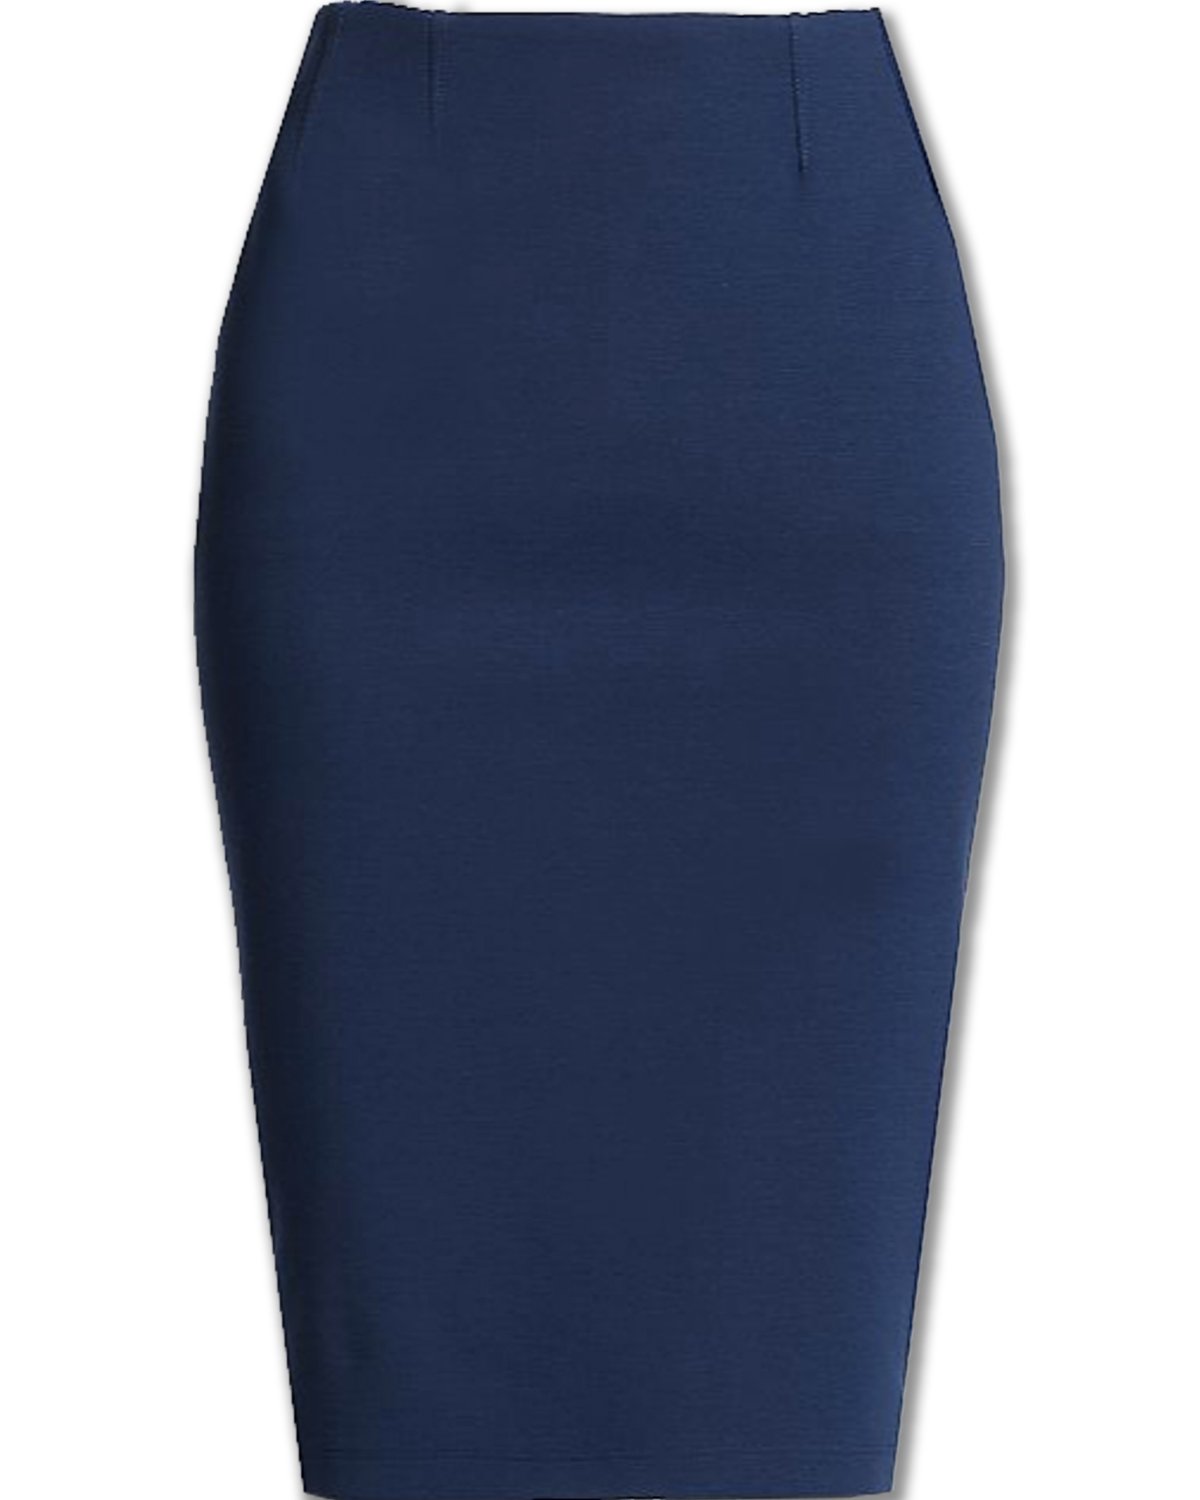 Pencil Skirt Blue 93